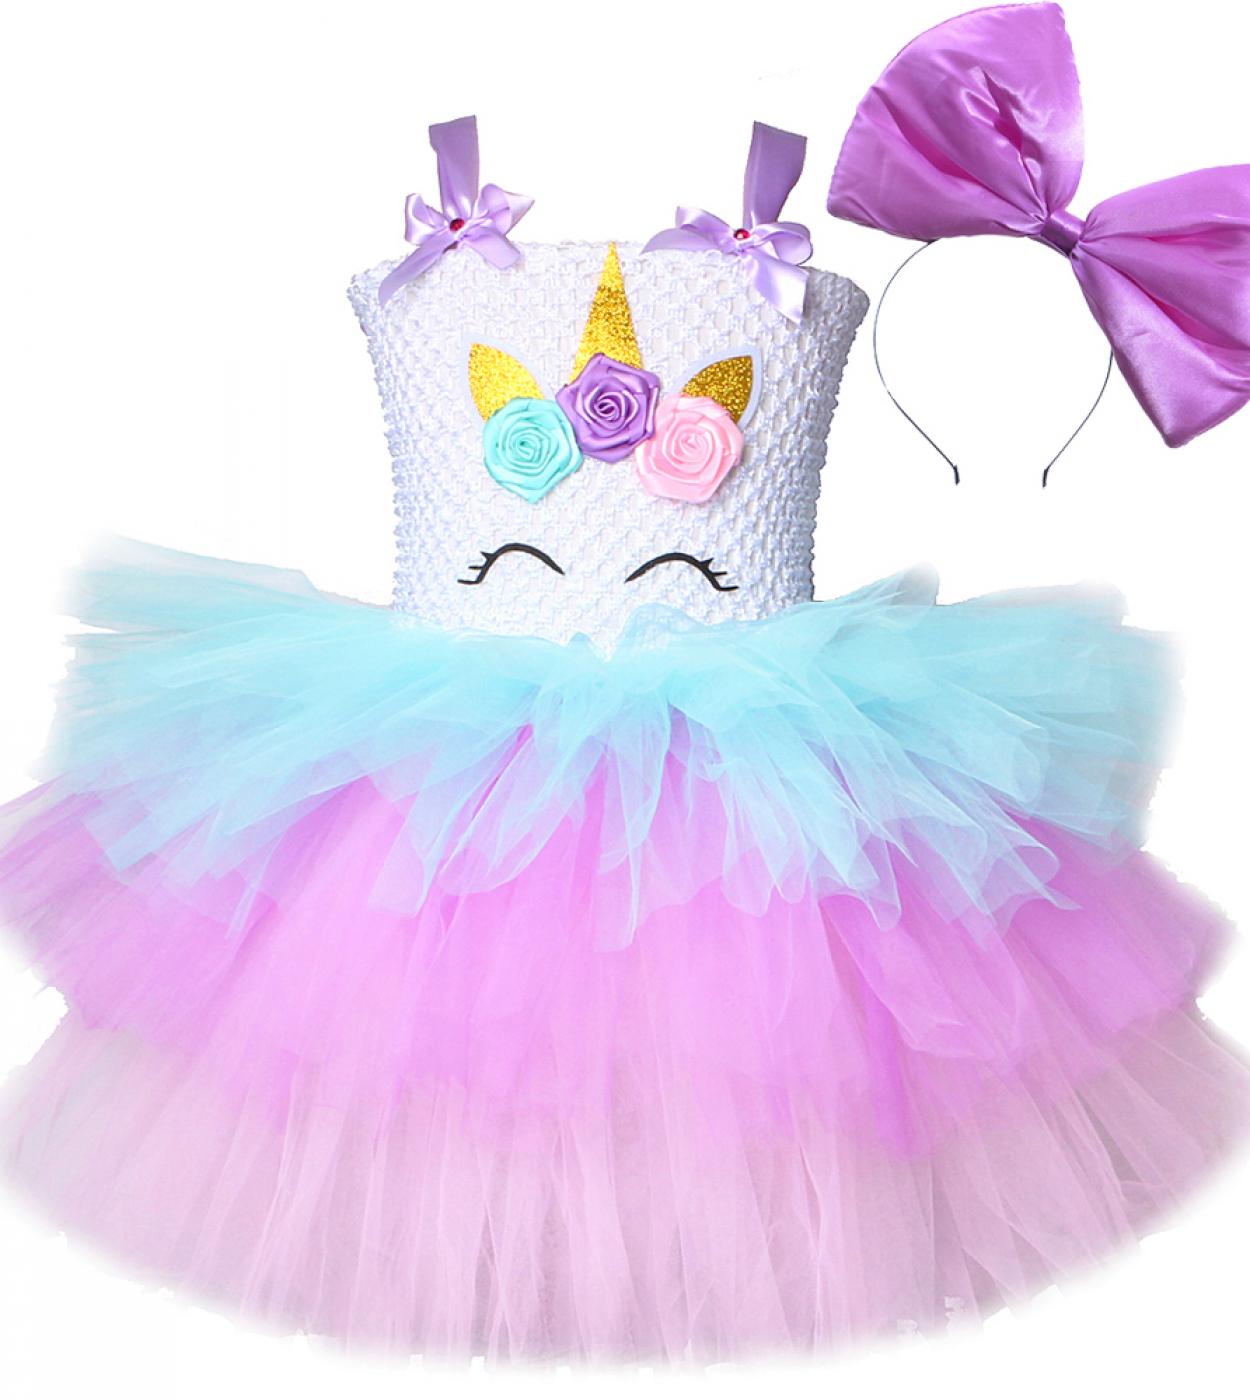 3 طبقات Lol Surprise Princess Dress For Girls Halloween Unicorn Costume فساتين عيد ميلاد للأطفال ذات طبقات مع فيونكة كبيرة Fluf